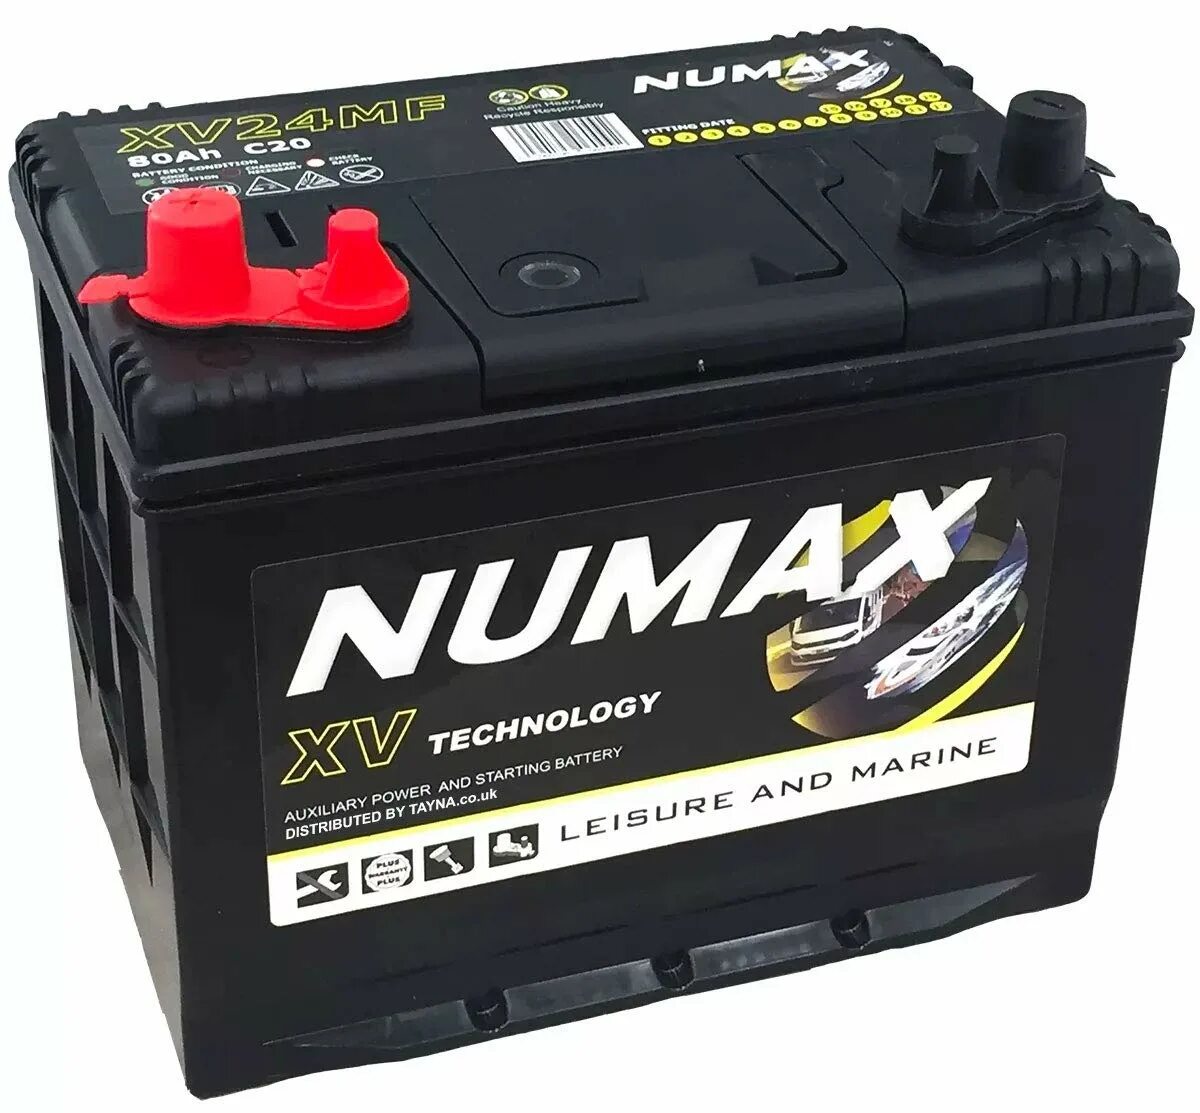 Numax dc24. Numax 75в24l 12v. Numax dc244a. 12v 800ah Battery.